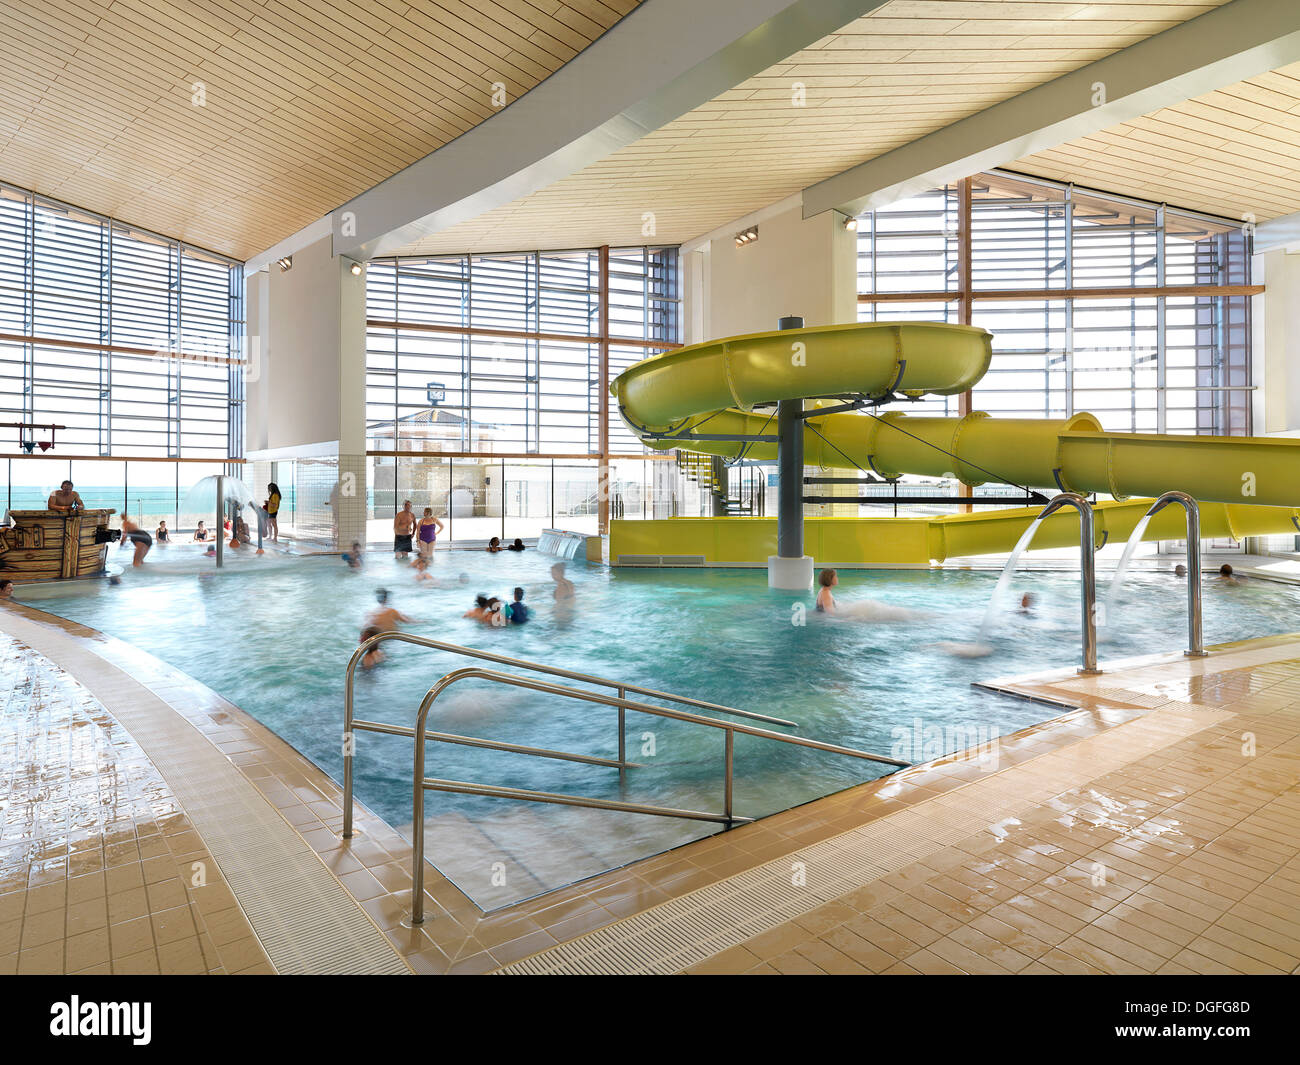 Splashpoint Leisure Centre, Worthing, United Kingdom. Architect: Wilkinson Eyre Architects, 2013. Splash pool. Stock Photo